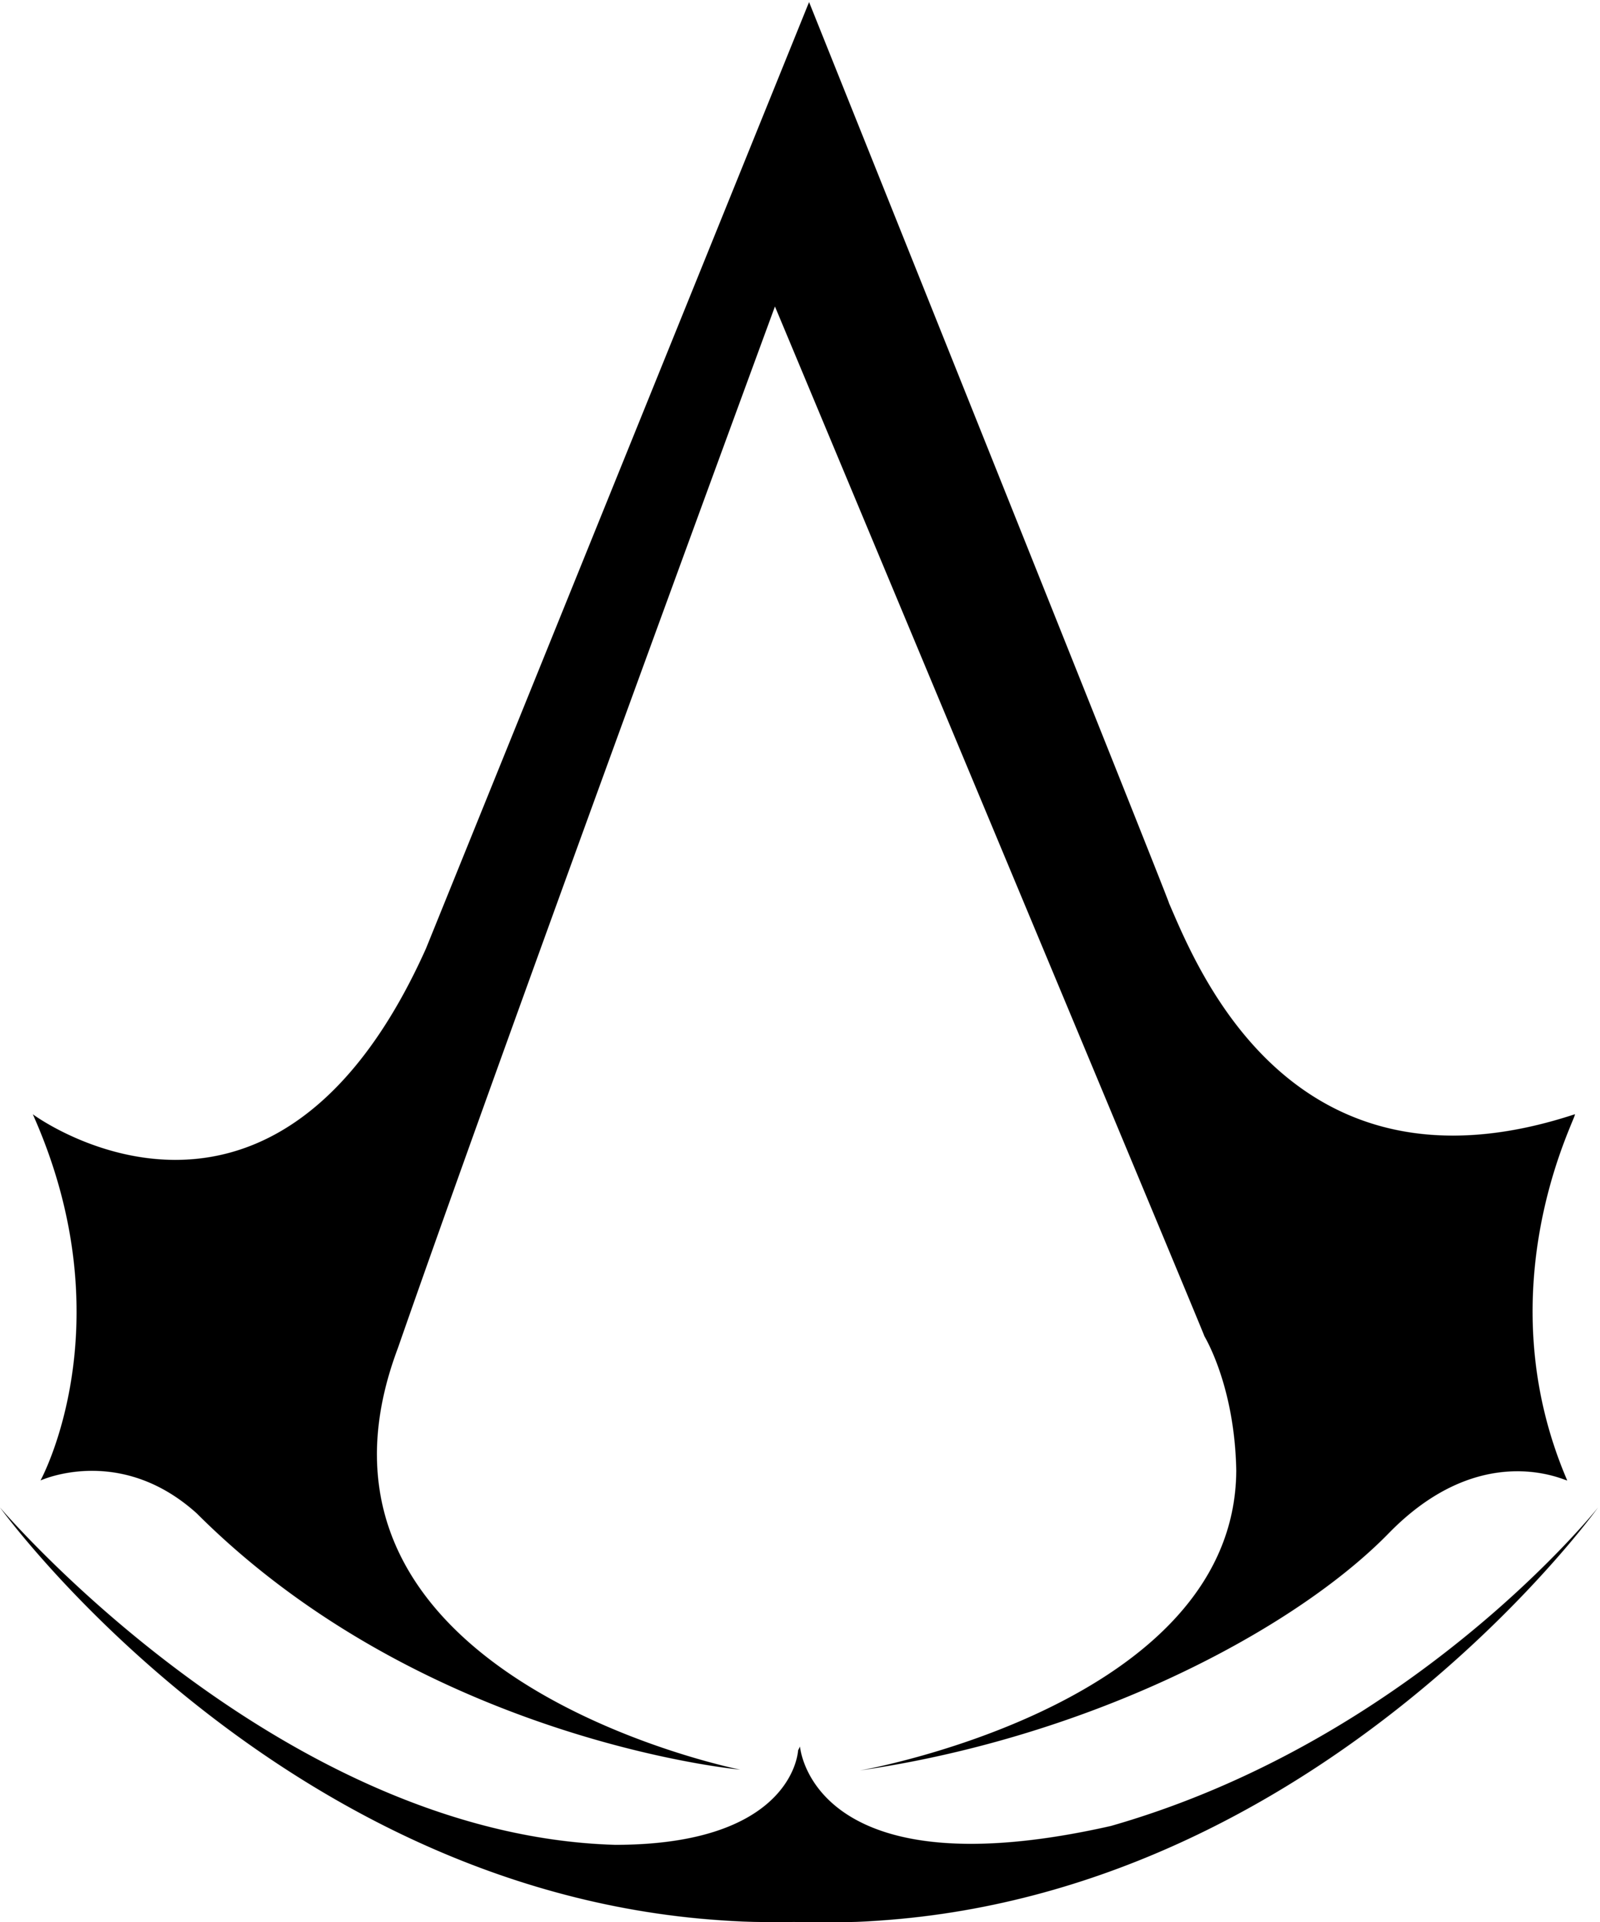 Assassin&;s Creed Wallpaper